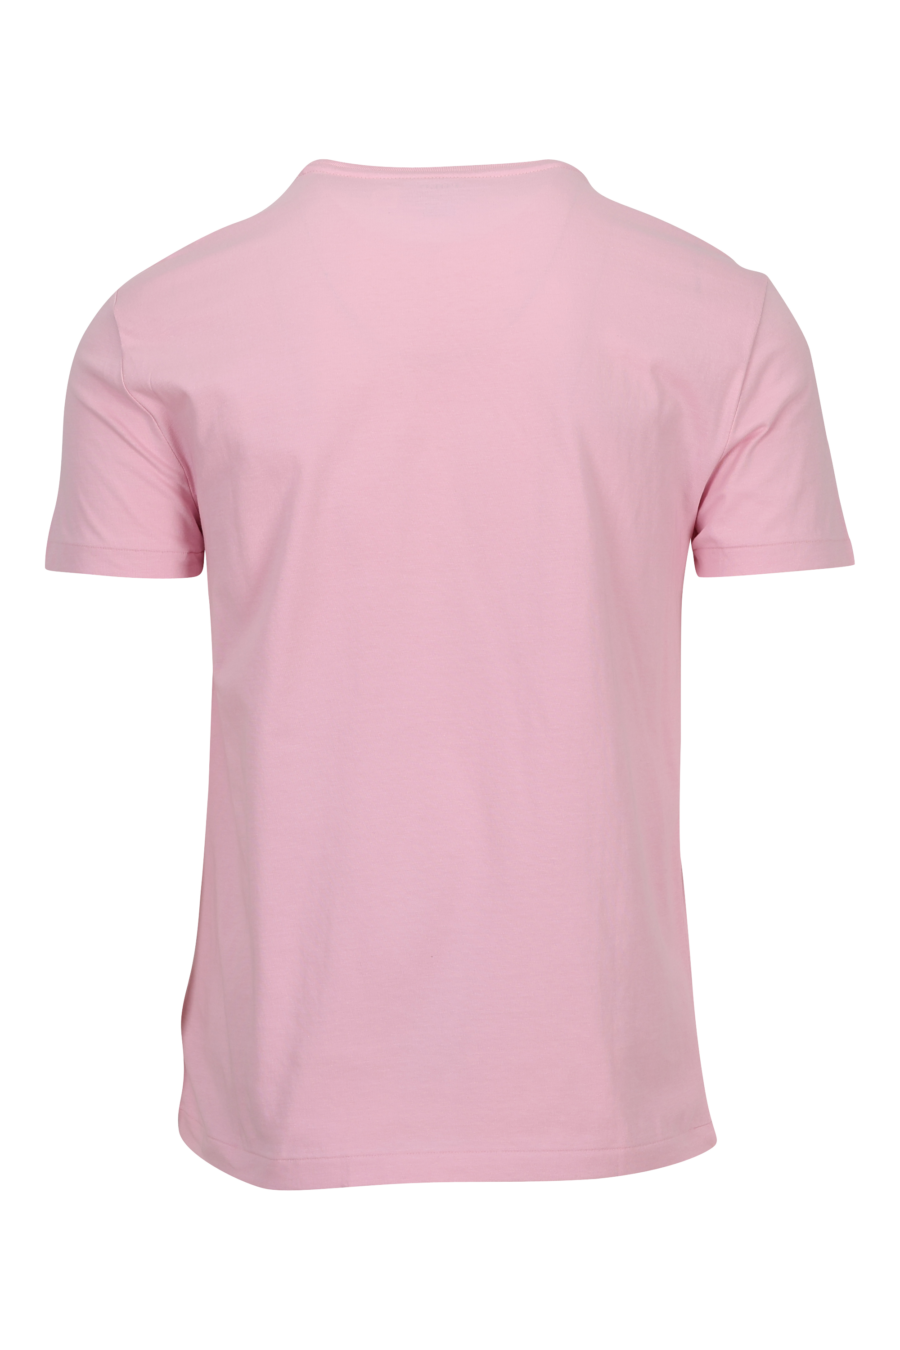 Camiseta rosa con minilogo "polo" verde - 3616536032445 1